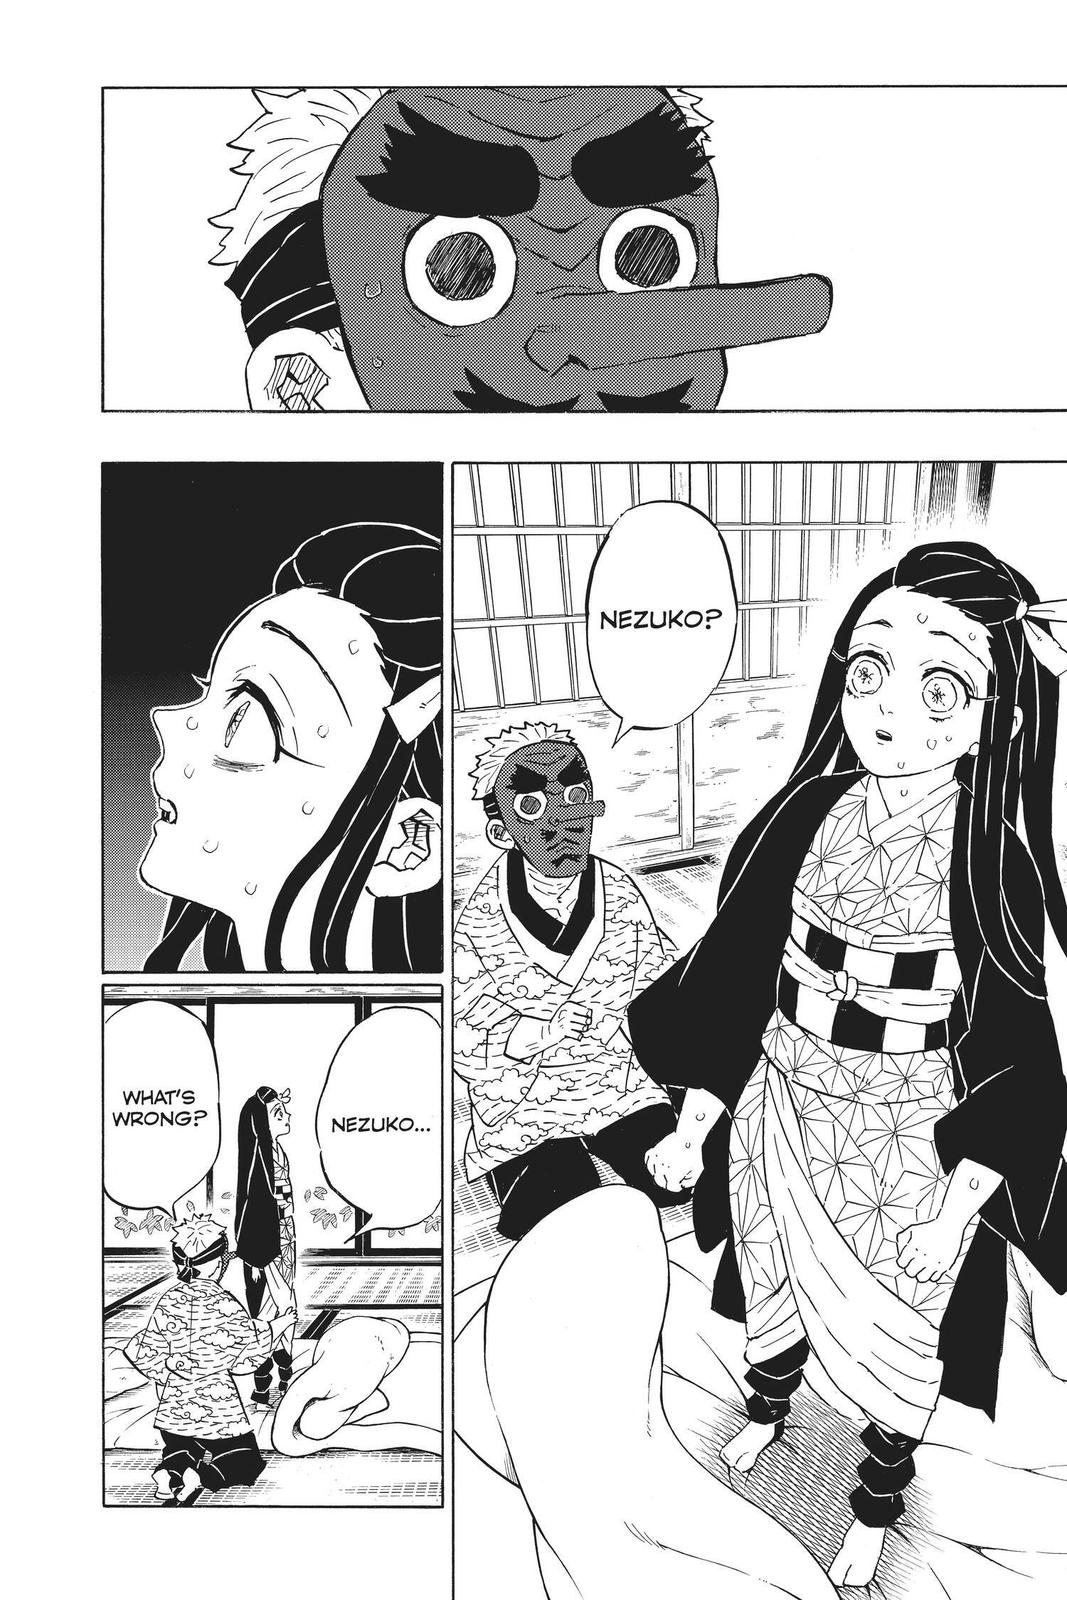 Demon Slayer Manga Manga Chapter - 185 - image 2